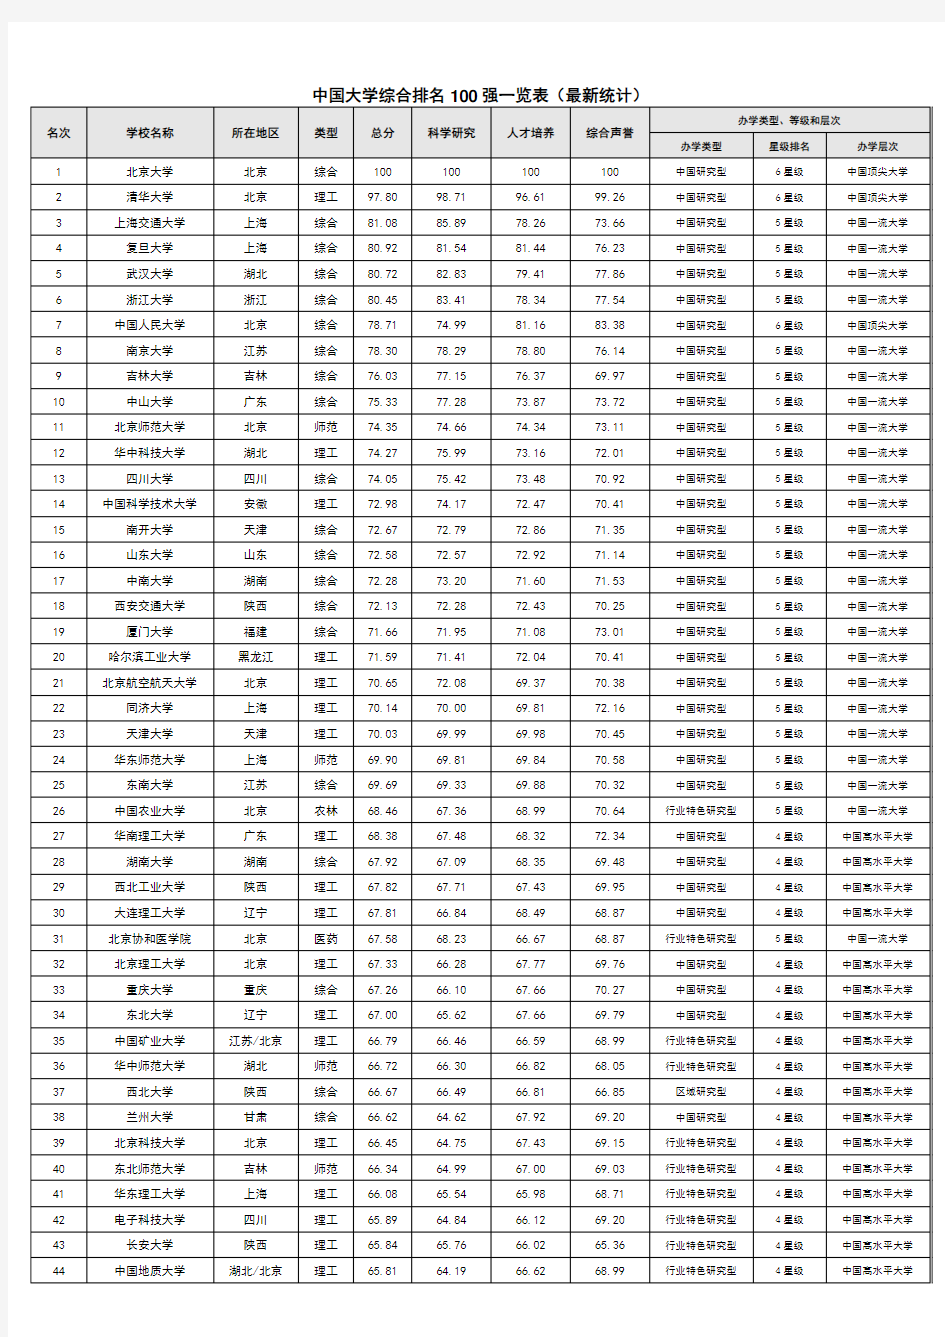 中国大学综合排名100强一览表(最新版)